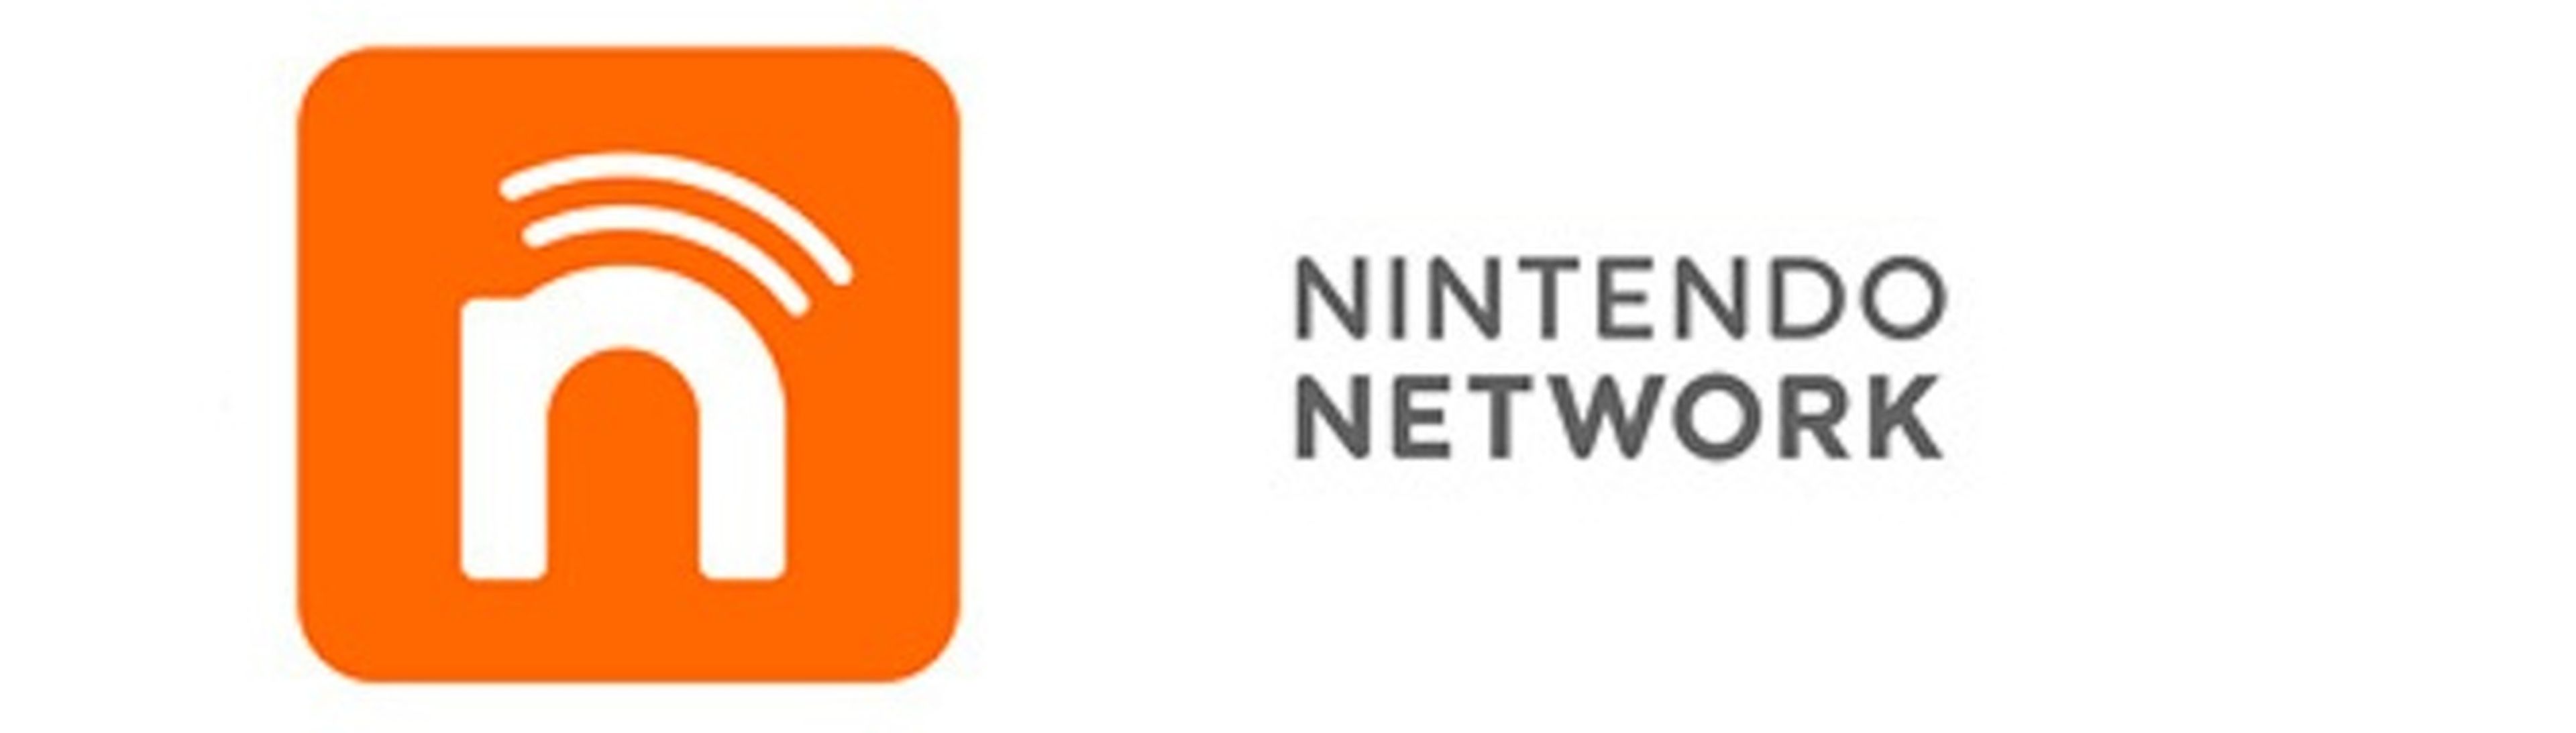 Más detalles de Nintendo Network